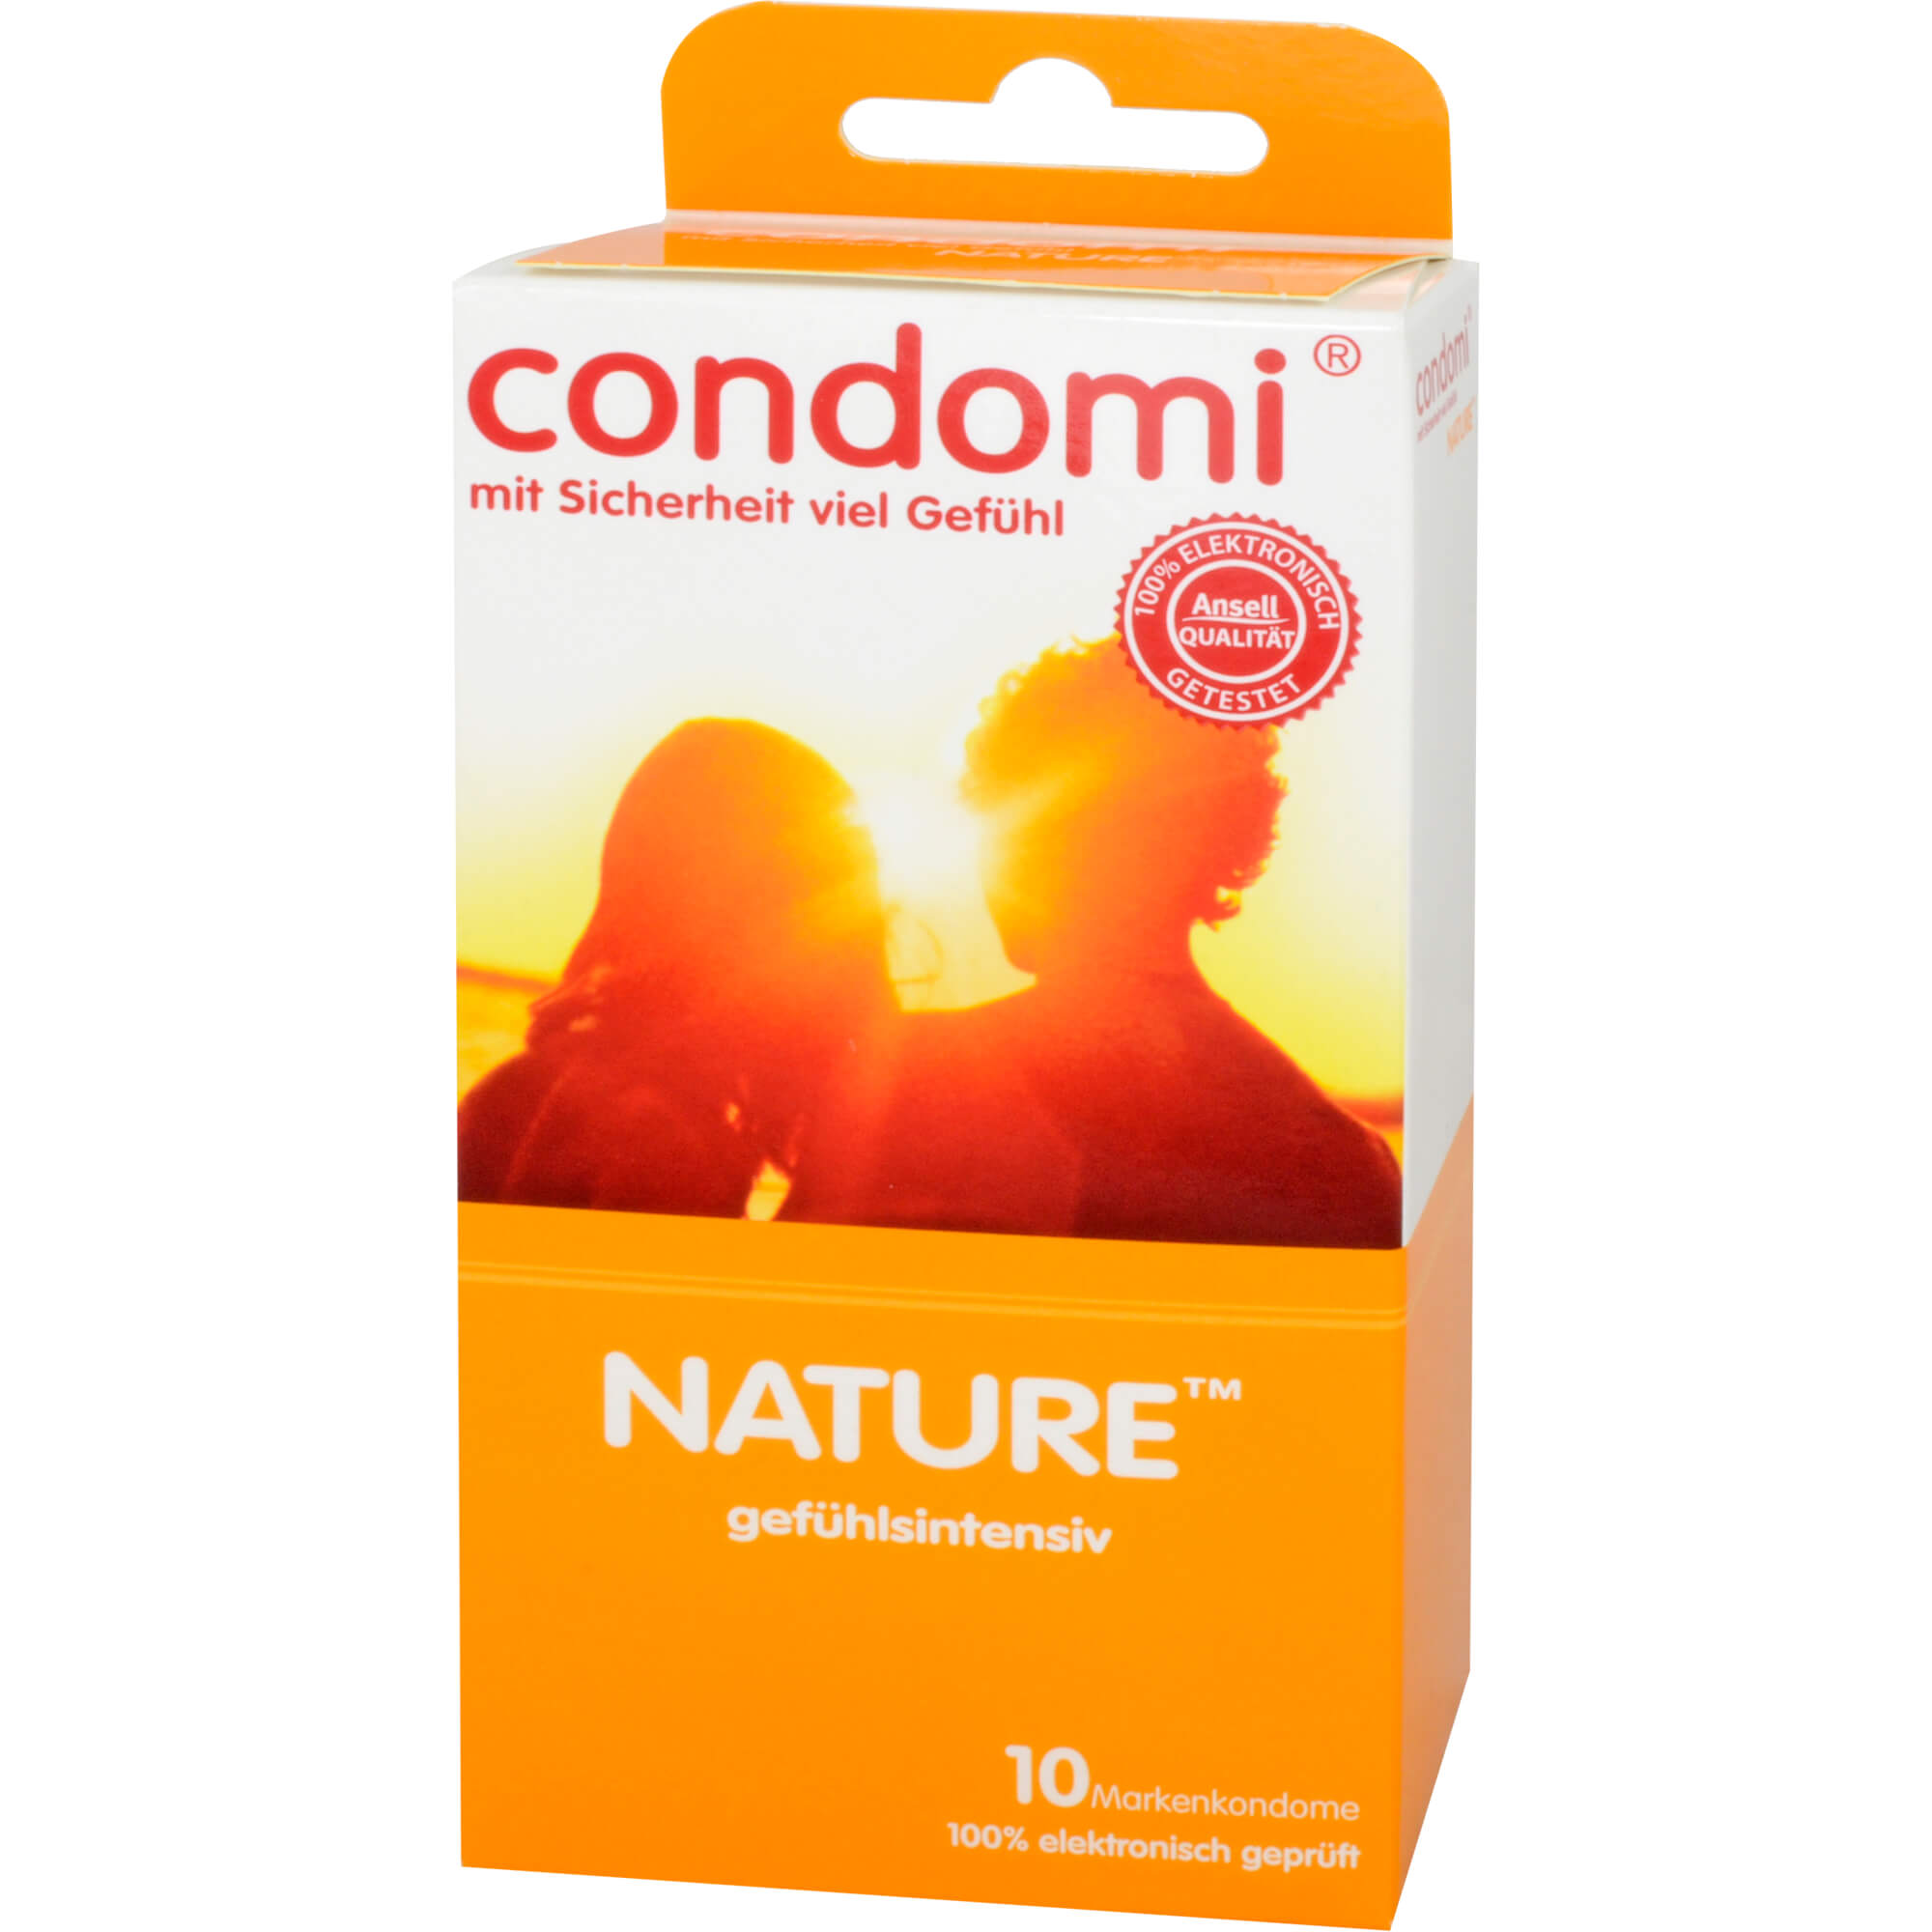 Gefühlsintensive Kondome für aufregende Momente.